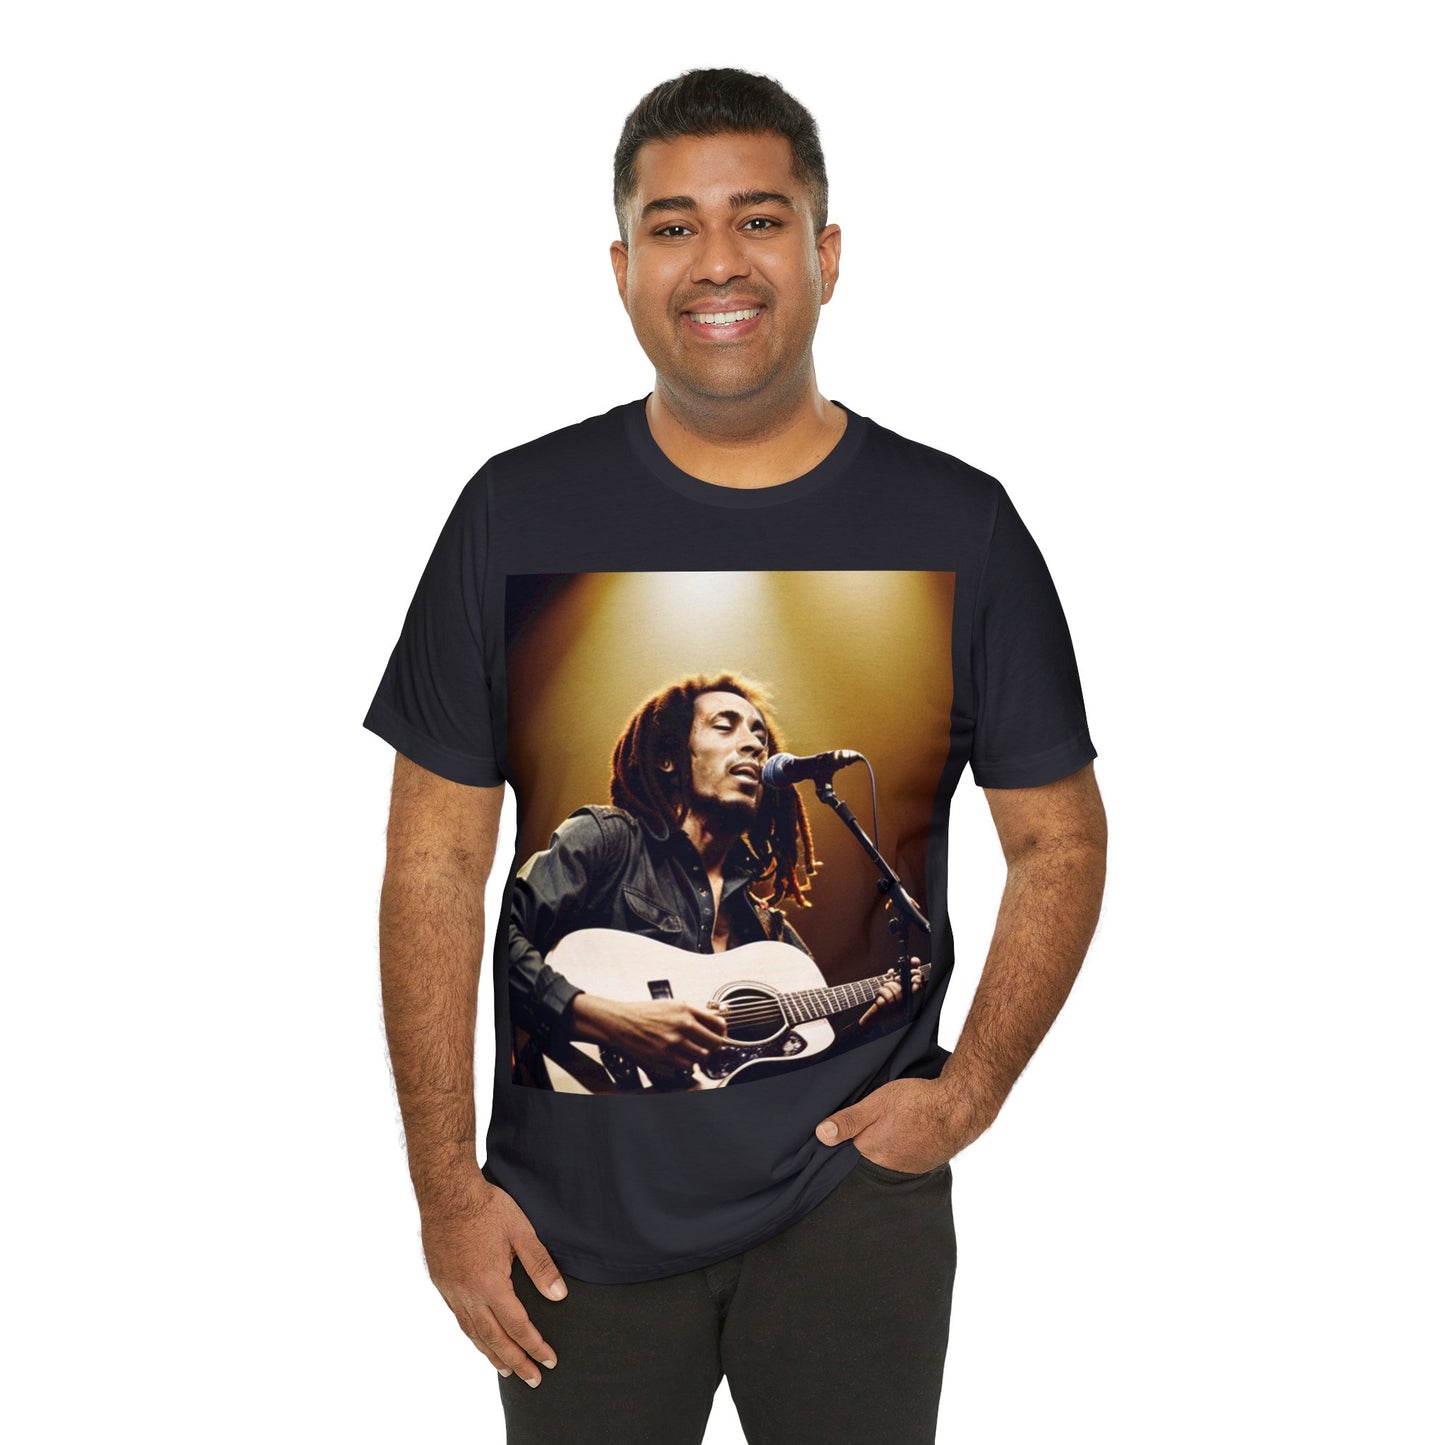 Bob Marley In Concert -  Short Sleeve Tee